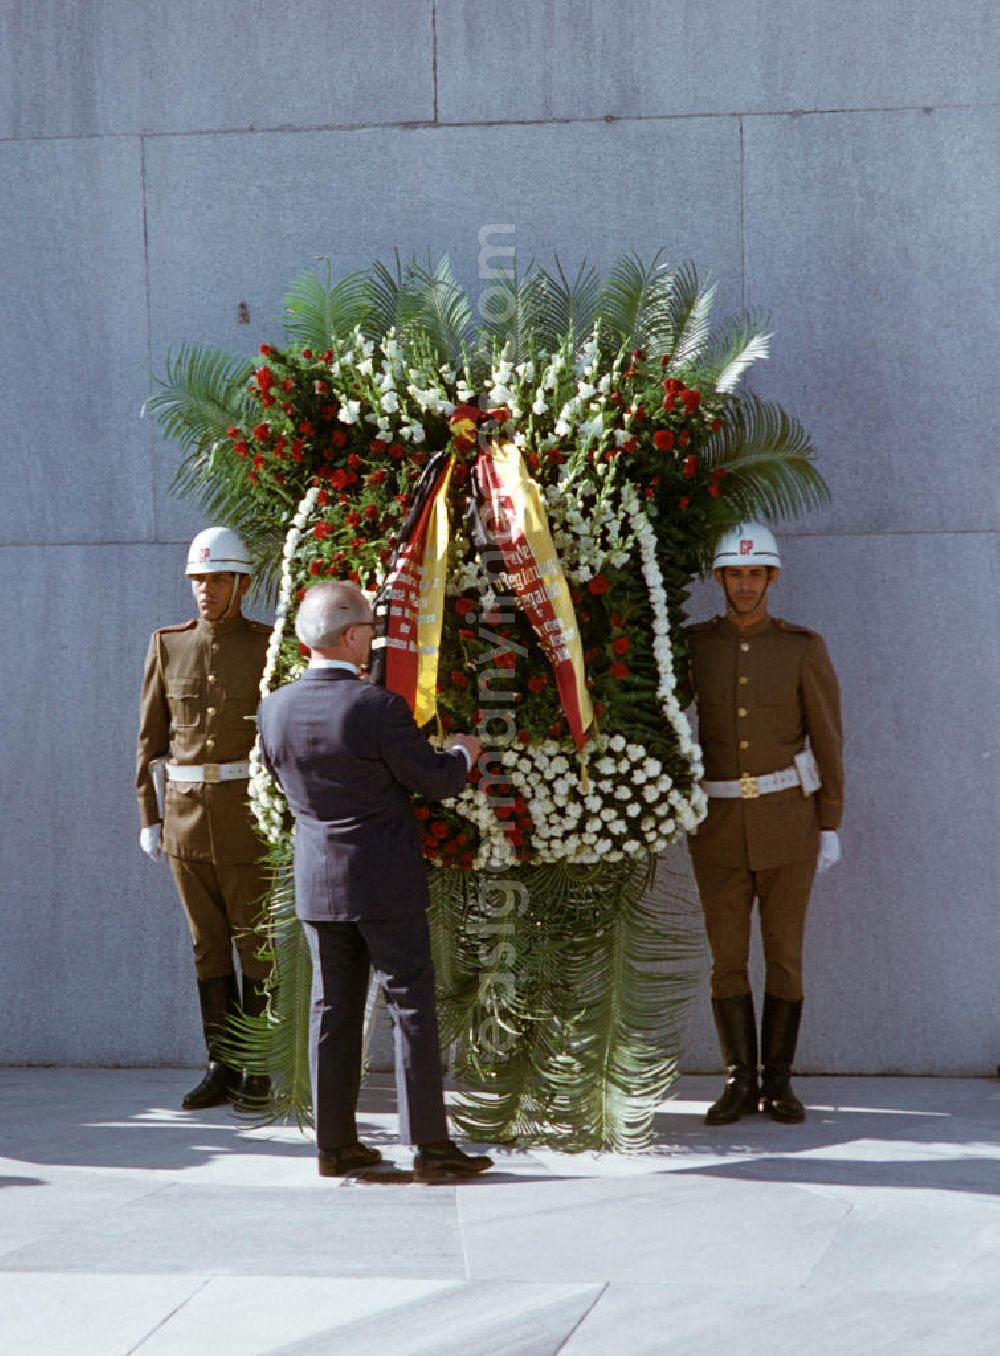 GDR picture archive: Havanna - Kranzniederlegung des Staats- und Parteivorsitzenden der DDR, Erich Honecker, auf dem Plaza de la Revolución (Platz der Revolution) mit dem José-Martí-Denkmal in Havanna. Honecker stattete vom 2